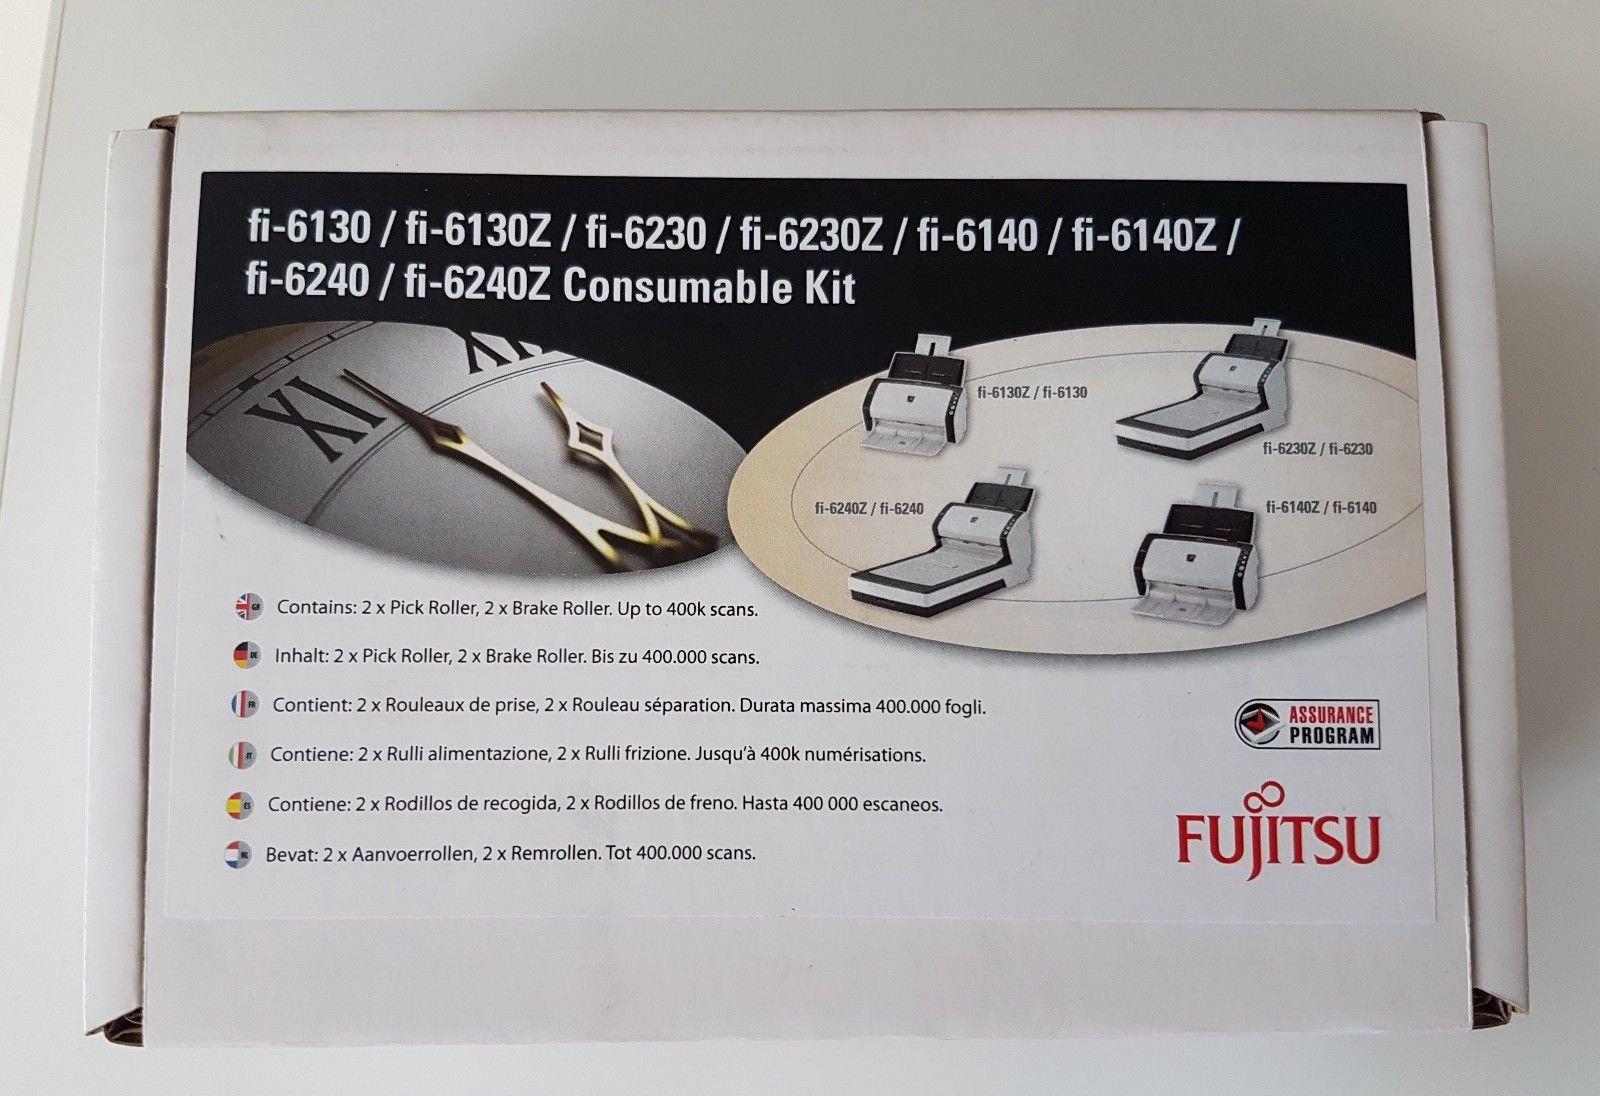 Комплект расходных материалов Fujitsu Consumable Kit оригинал для Fujitsu fi-6130/fi-6230/fi-6140/fi-6240/fi-6130Z/fi-6230Z/fi-6140Z/fi-6240Z, 4шт., 400000 страниц (CON-3540-011A)